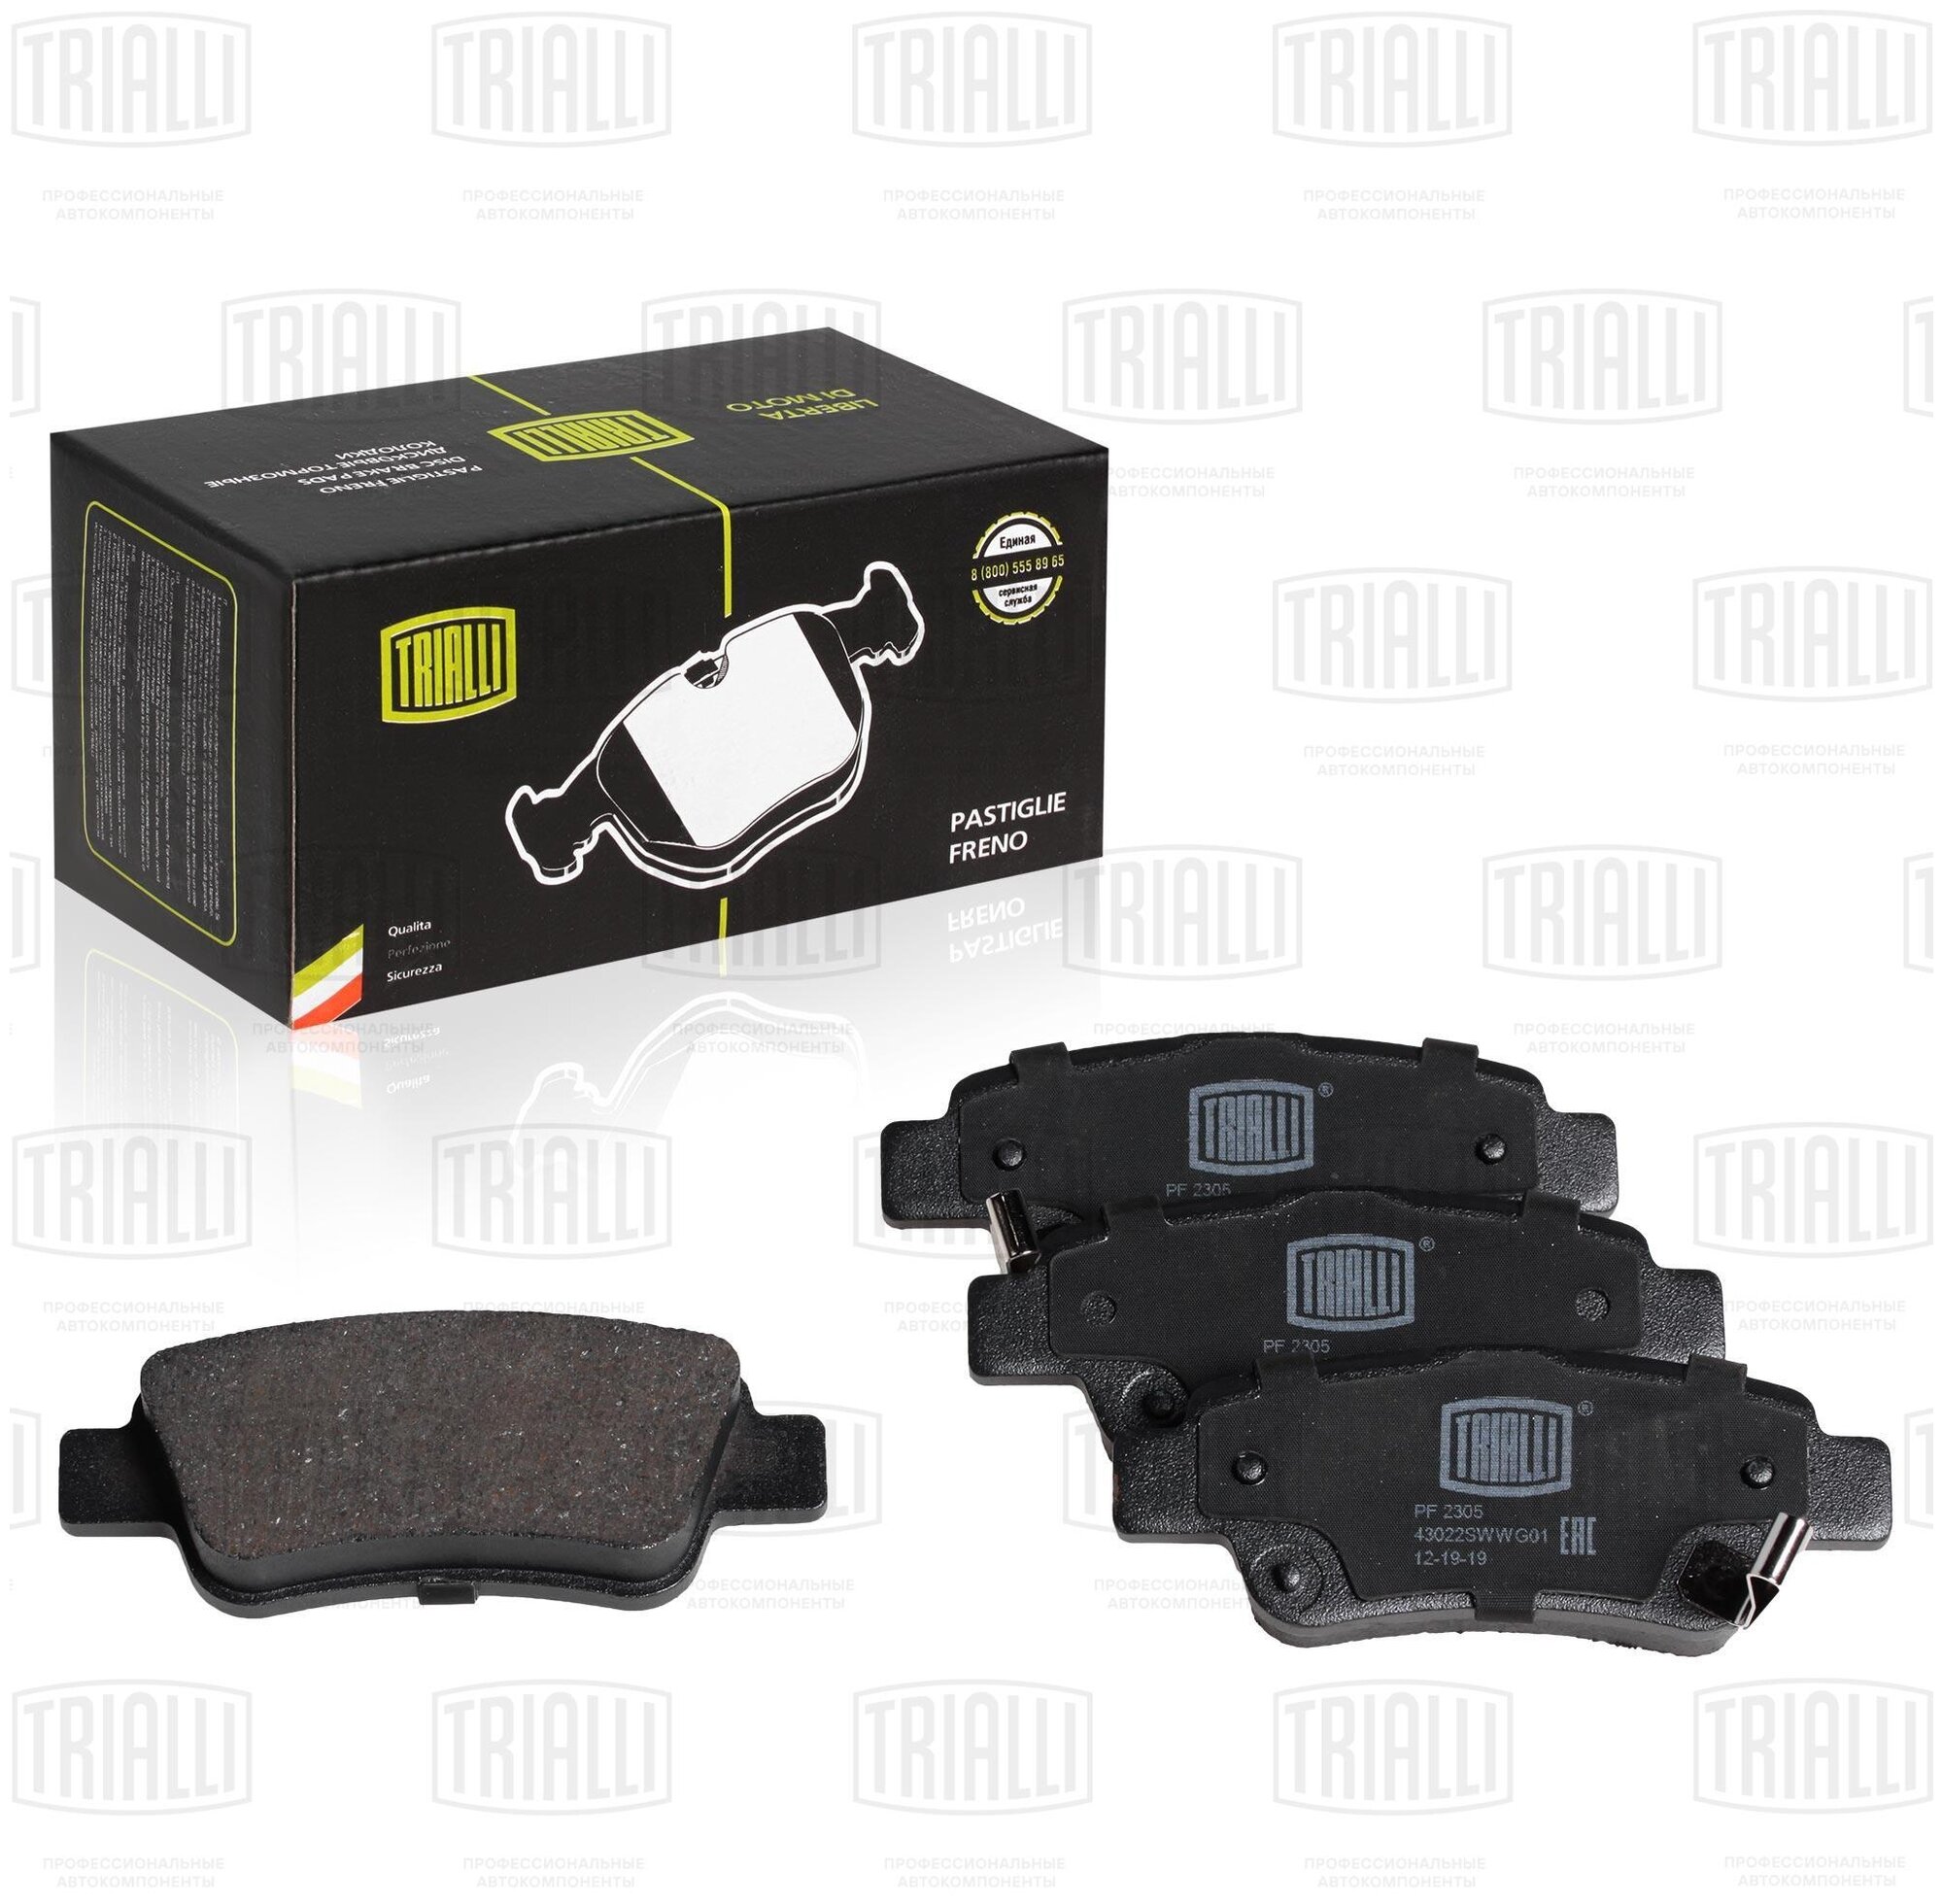 Дисковые тормозные колодки задние TRIALLI PF2305 для Honda CR-V Great Wall Safe (4 шт.)